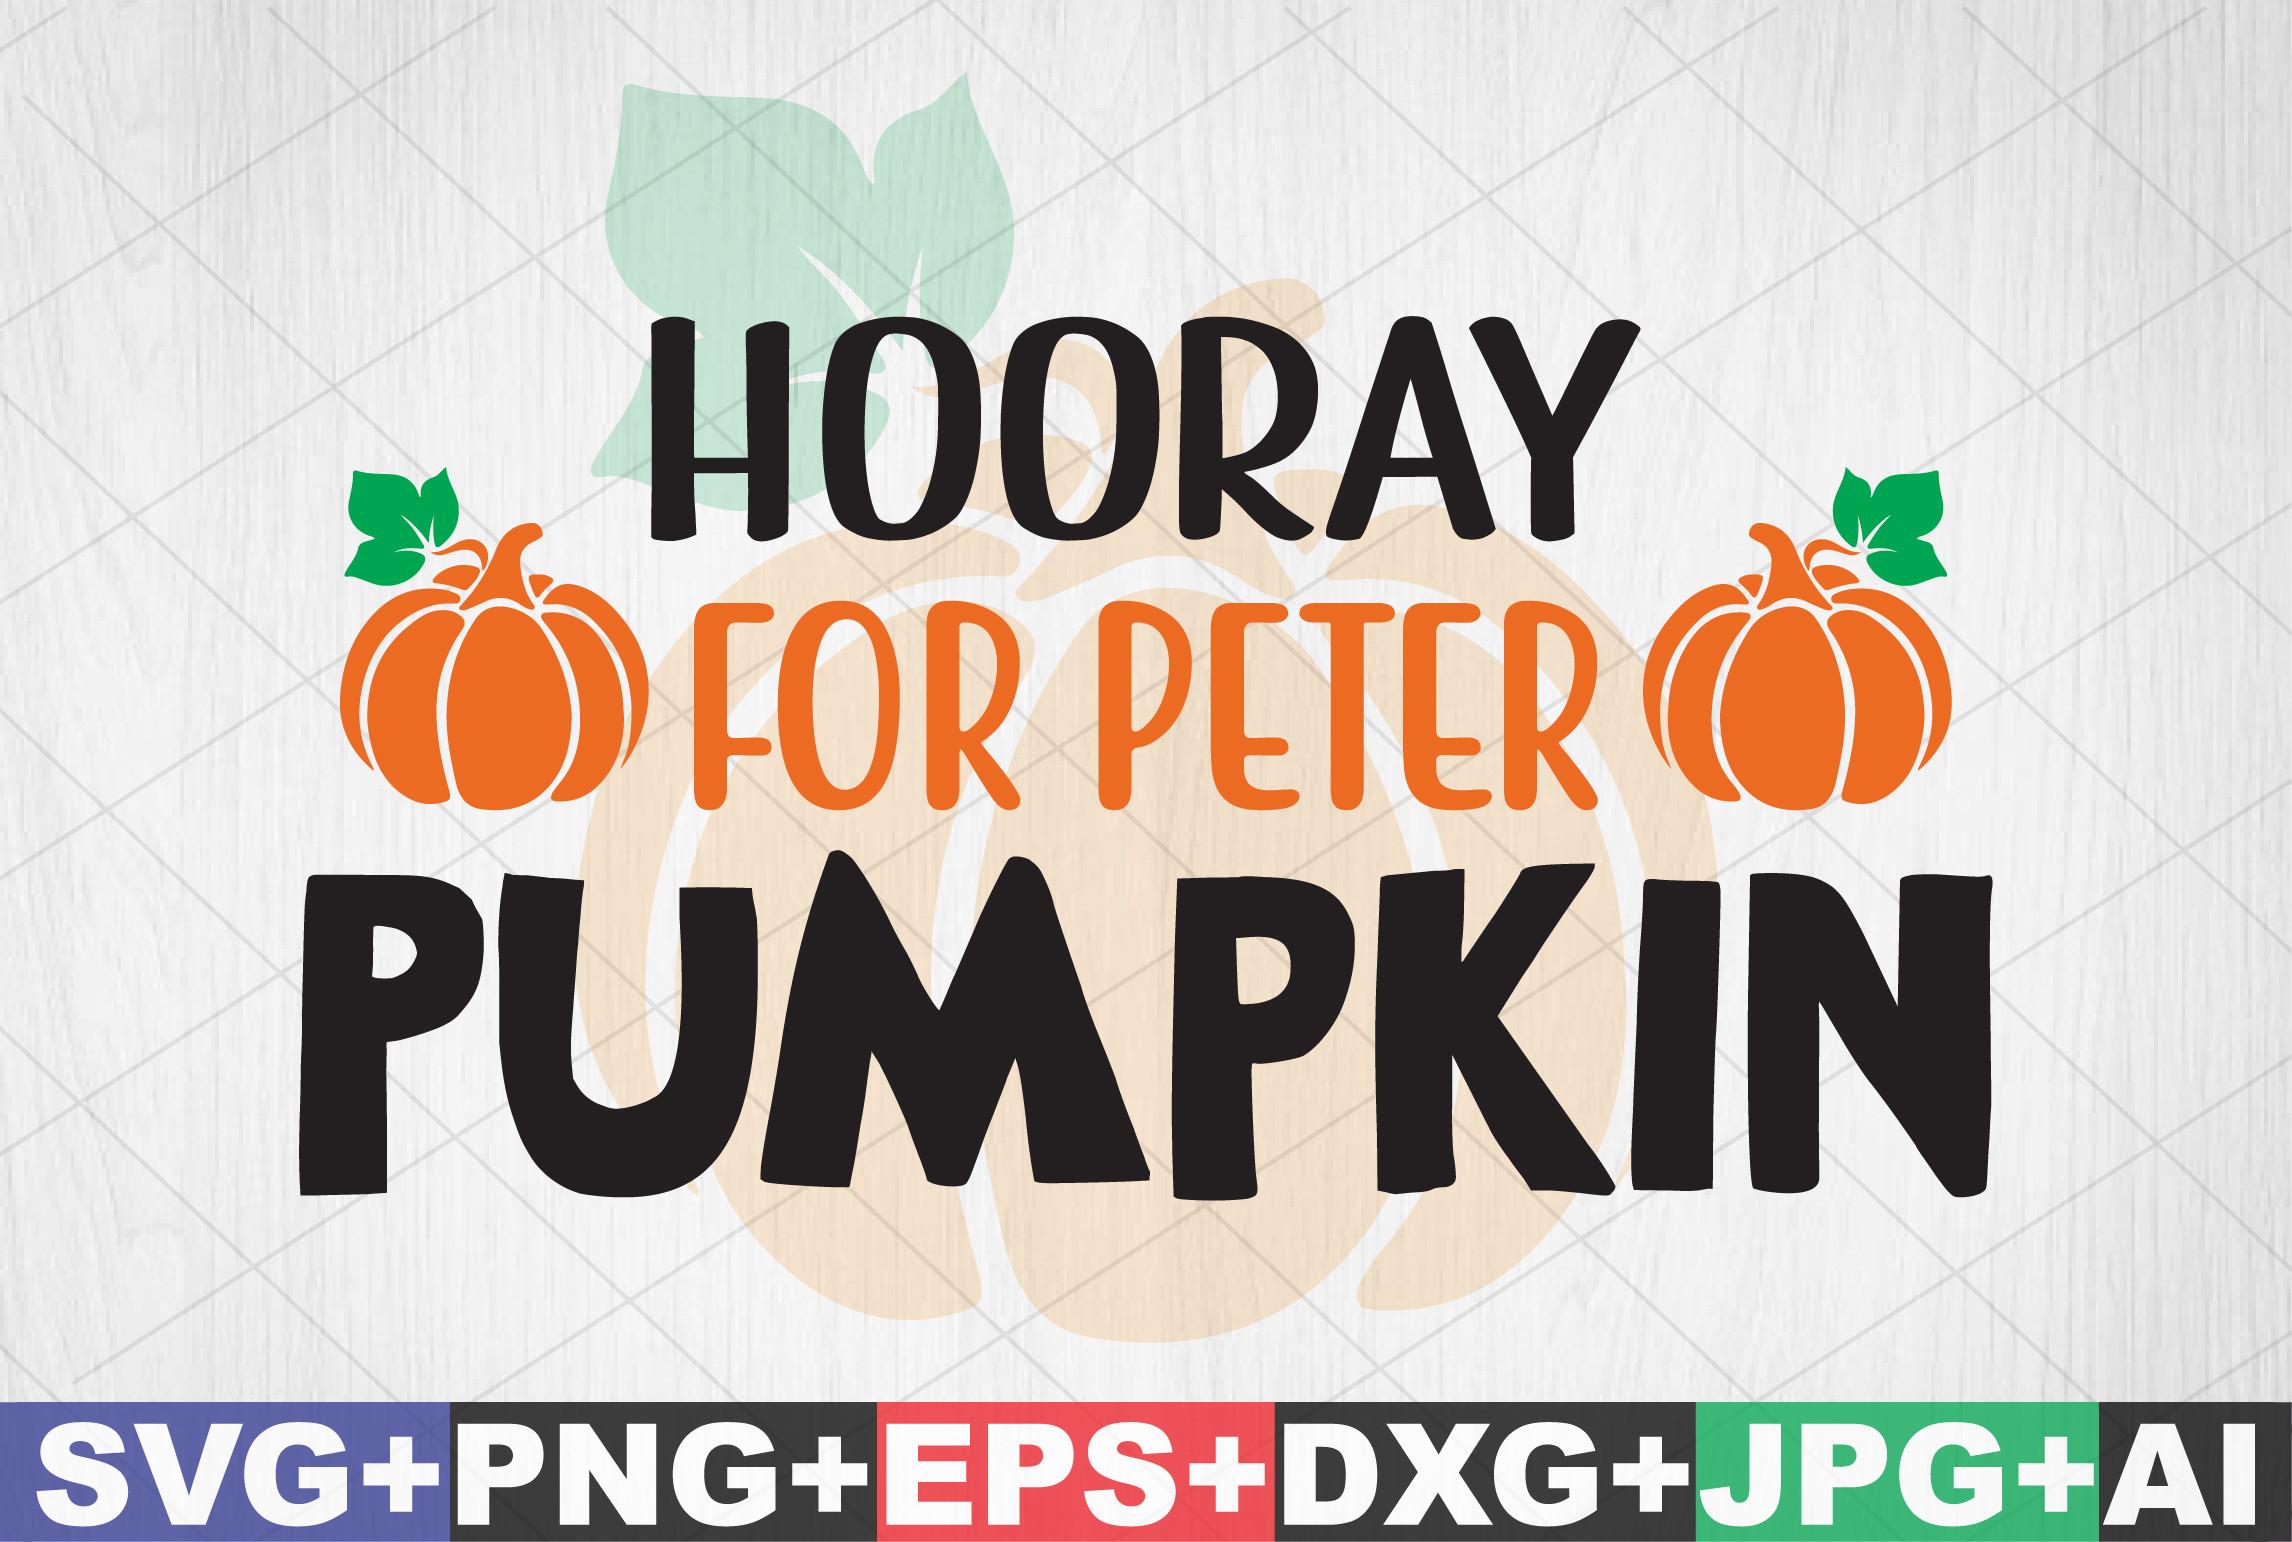 Hooray for Peter Pumpkin